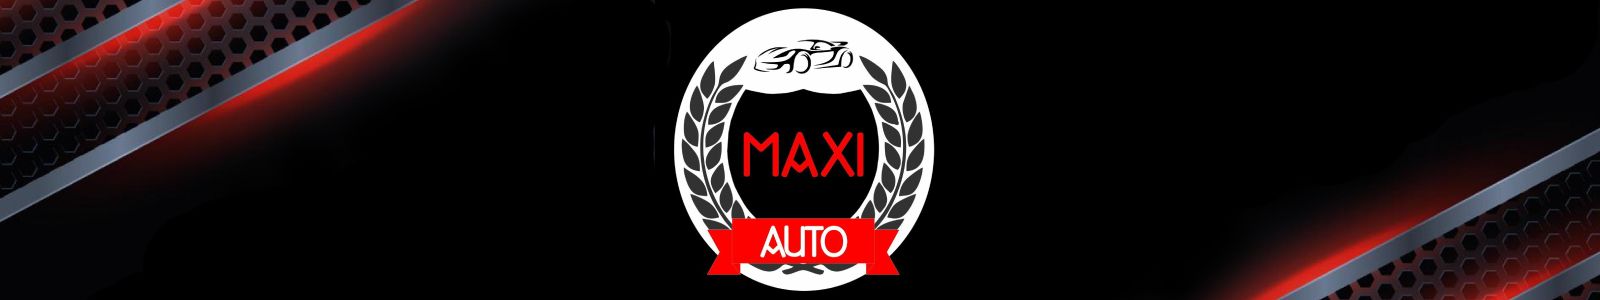 MaxiAuto top banner